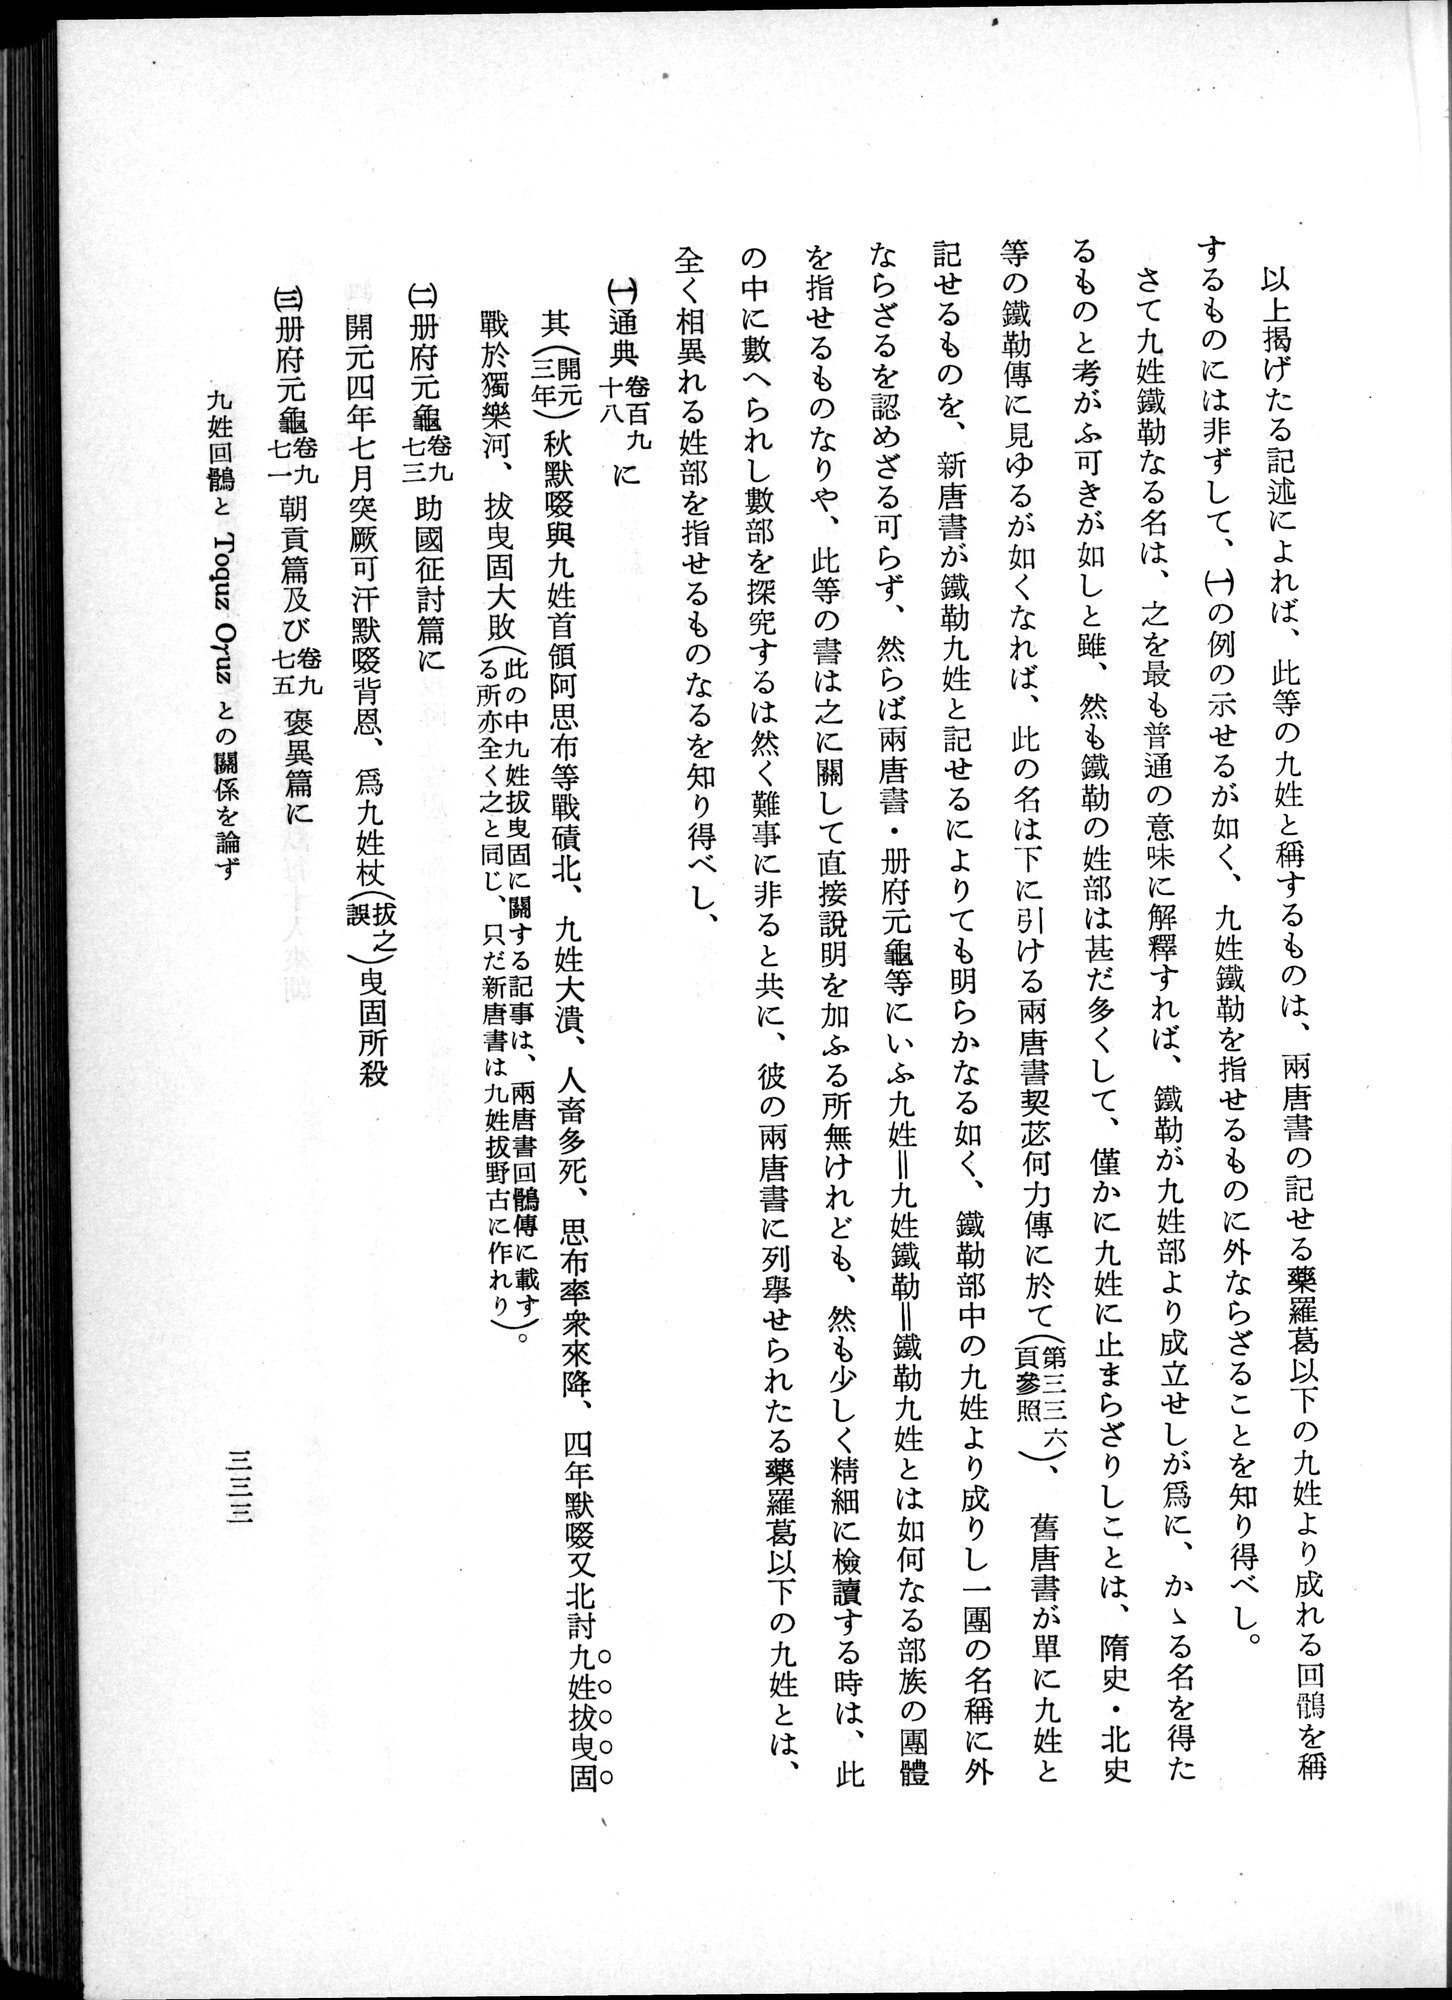 羽田博士史学論文集 : vol.1 / Page 371 (Grayscale High Resolution Image)